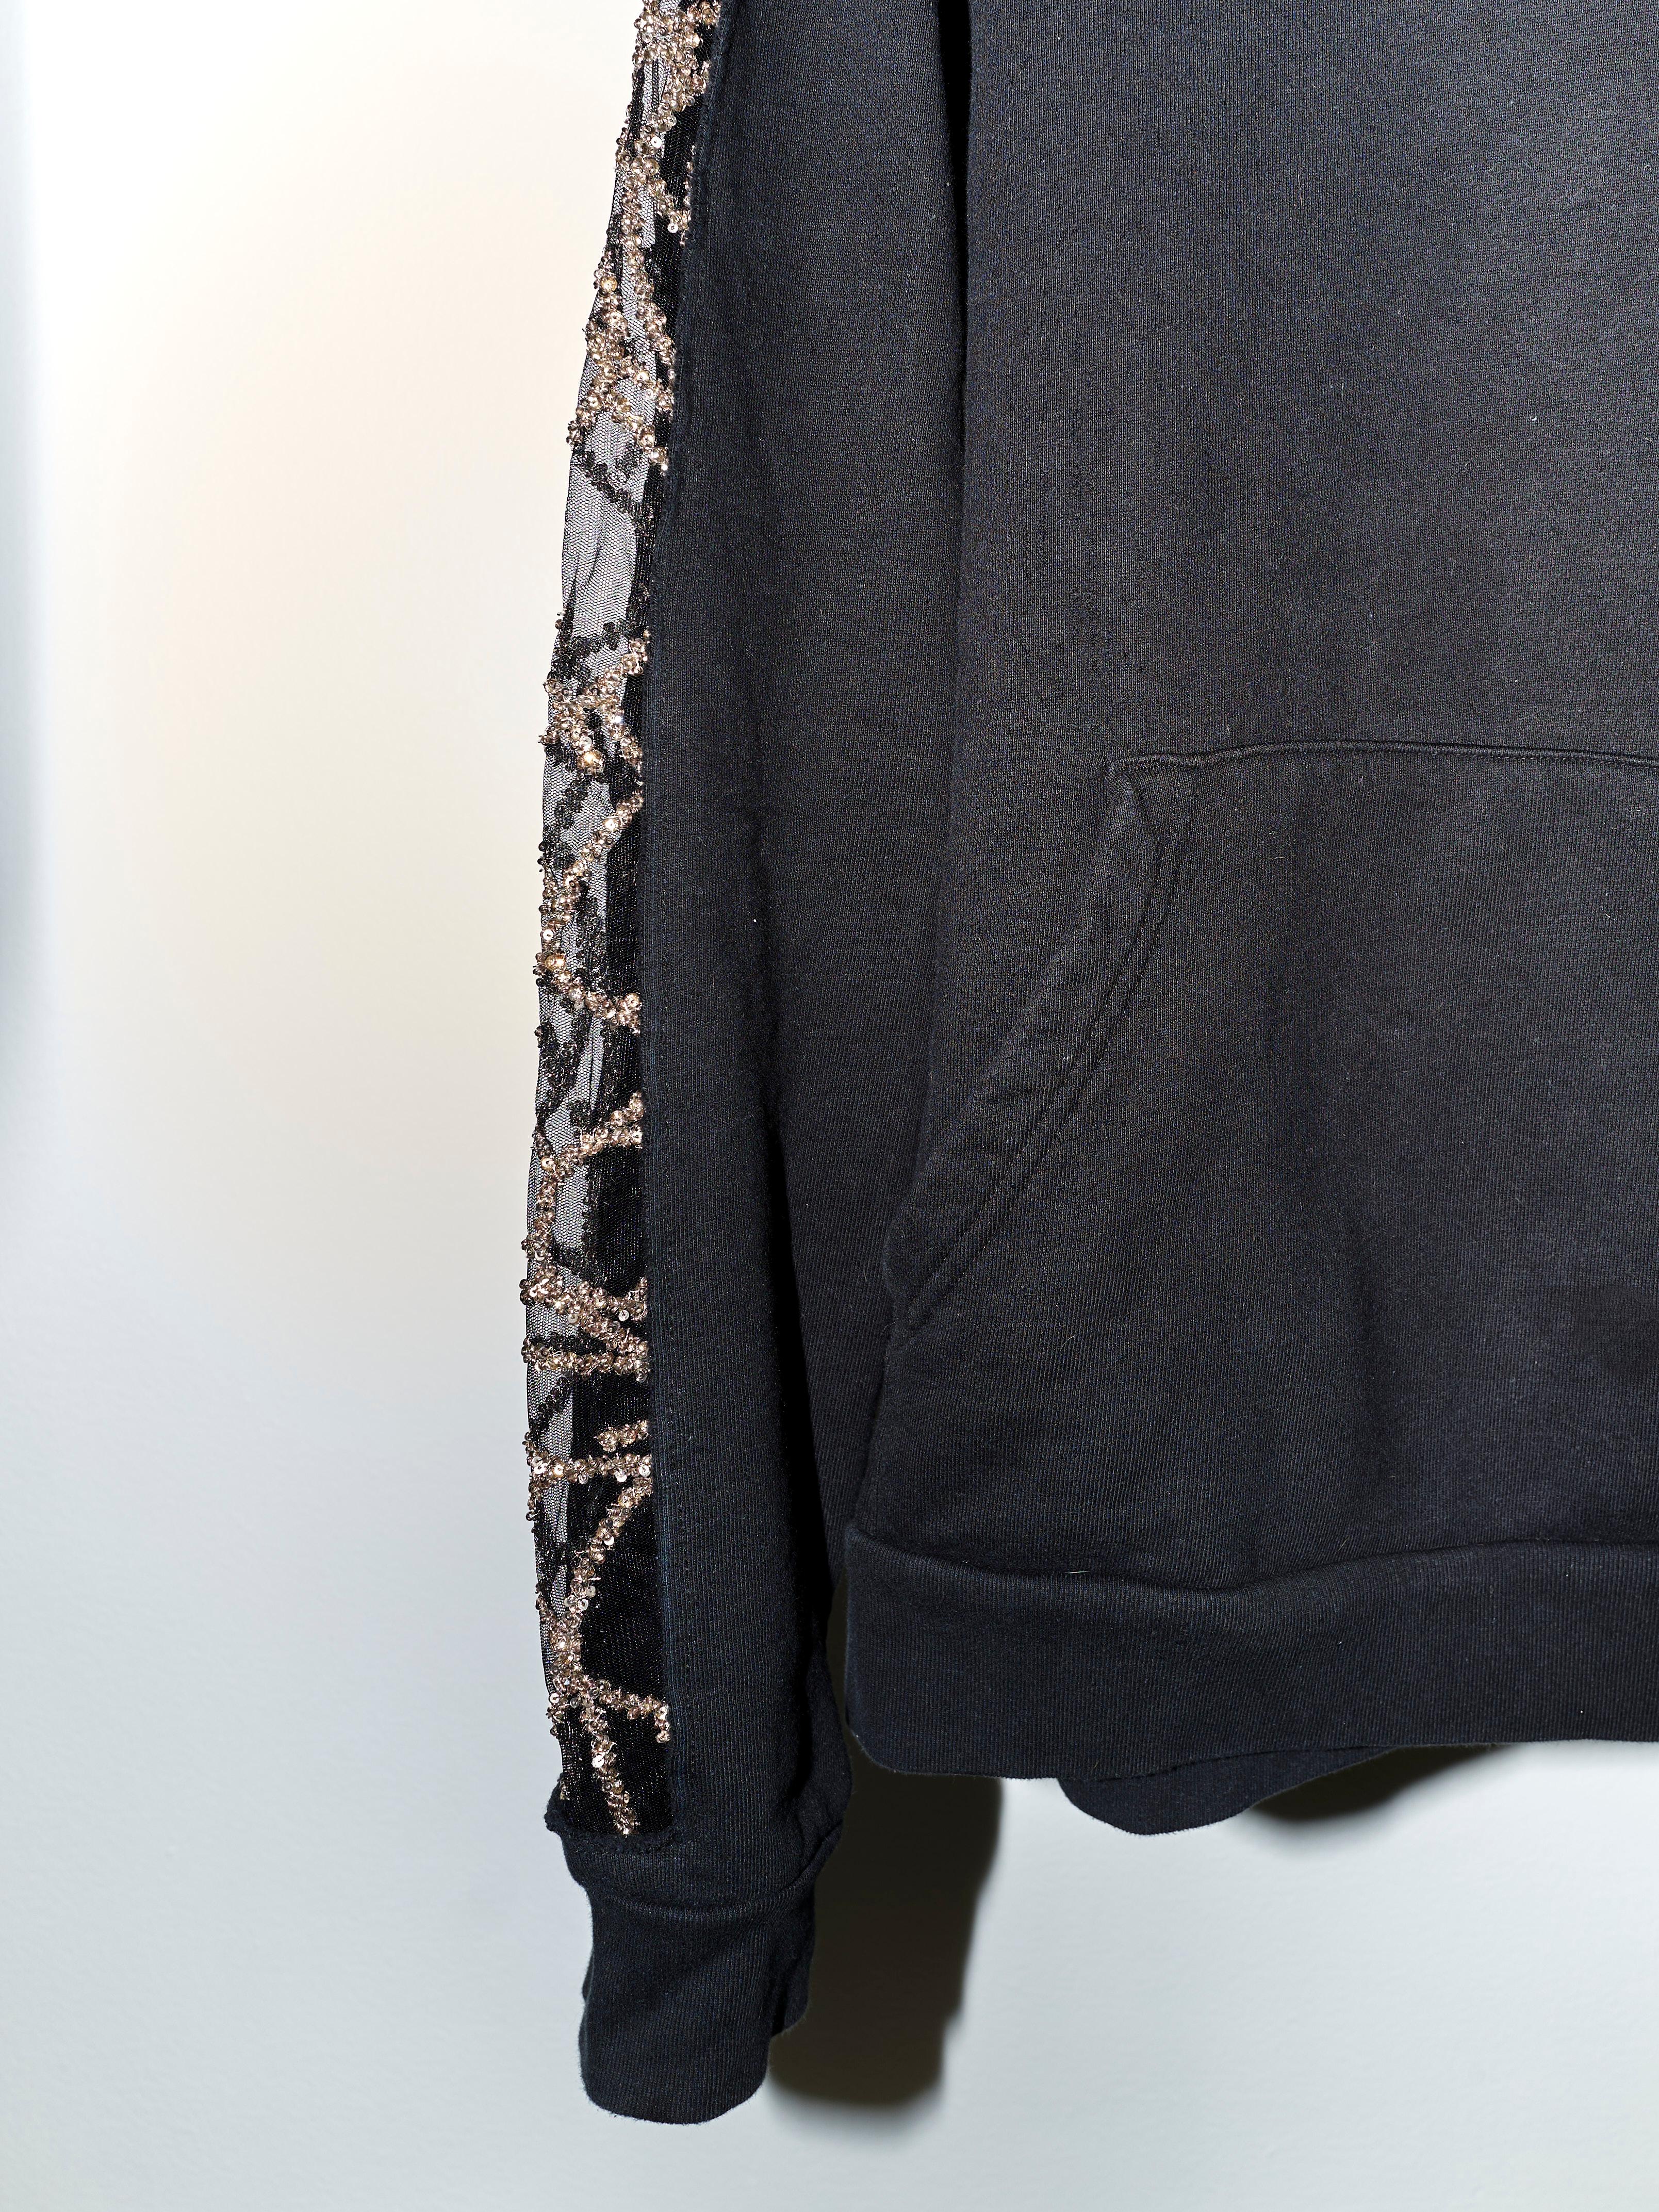 Black Hoodie Sweatshirt Transparent Sheer Mesh Chrystal Embroidery J Dauphin 1